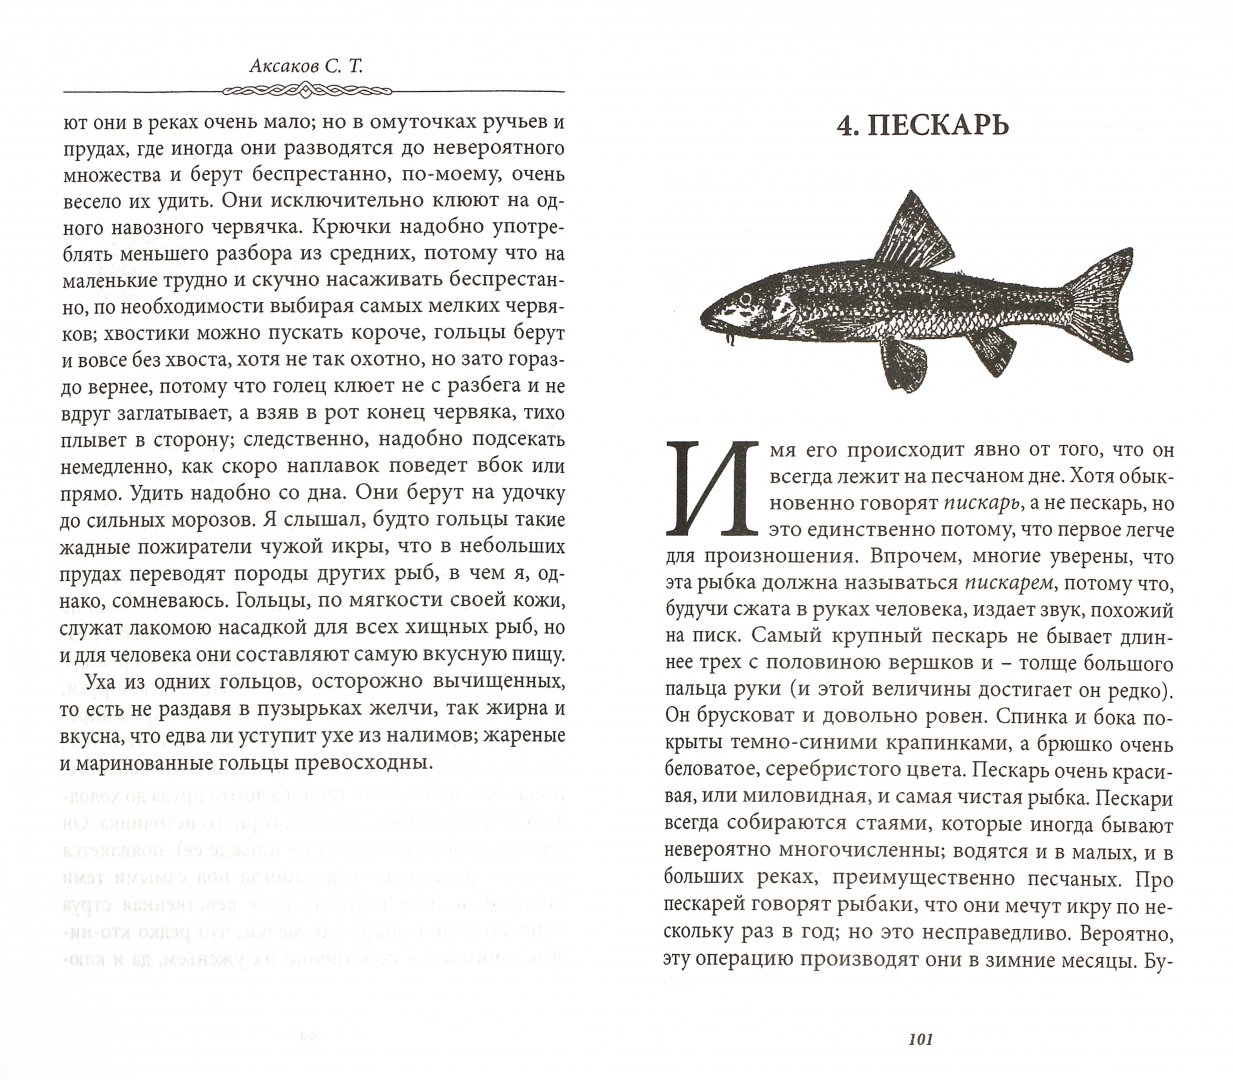 Иллюстрация 1 из 5 для Записки об уженье рыбы - Сергей Аксаков | Лабиринт - книги. Источник: Лабиринт